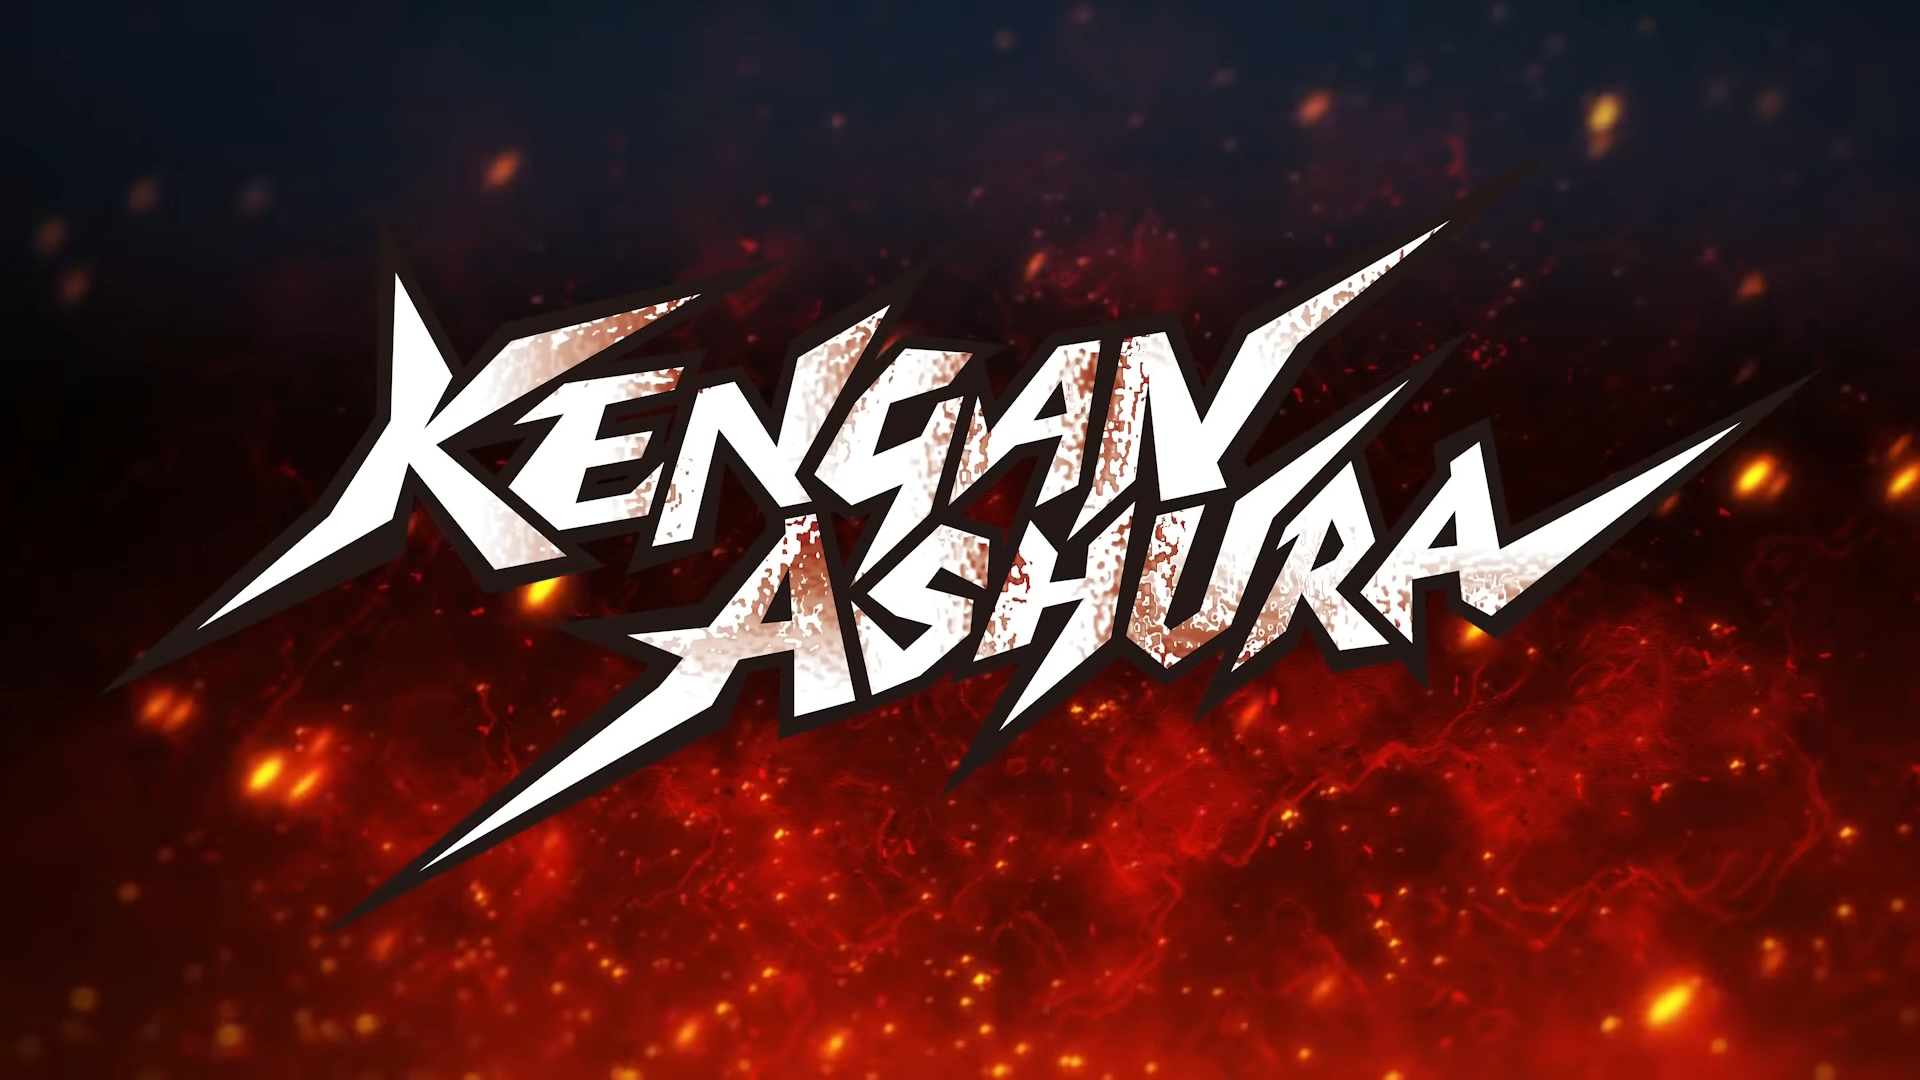 Kengan Ashura Netflix, Netflix Anime Kengan Ashura, Netflix New Releases, Netflix Animation